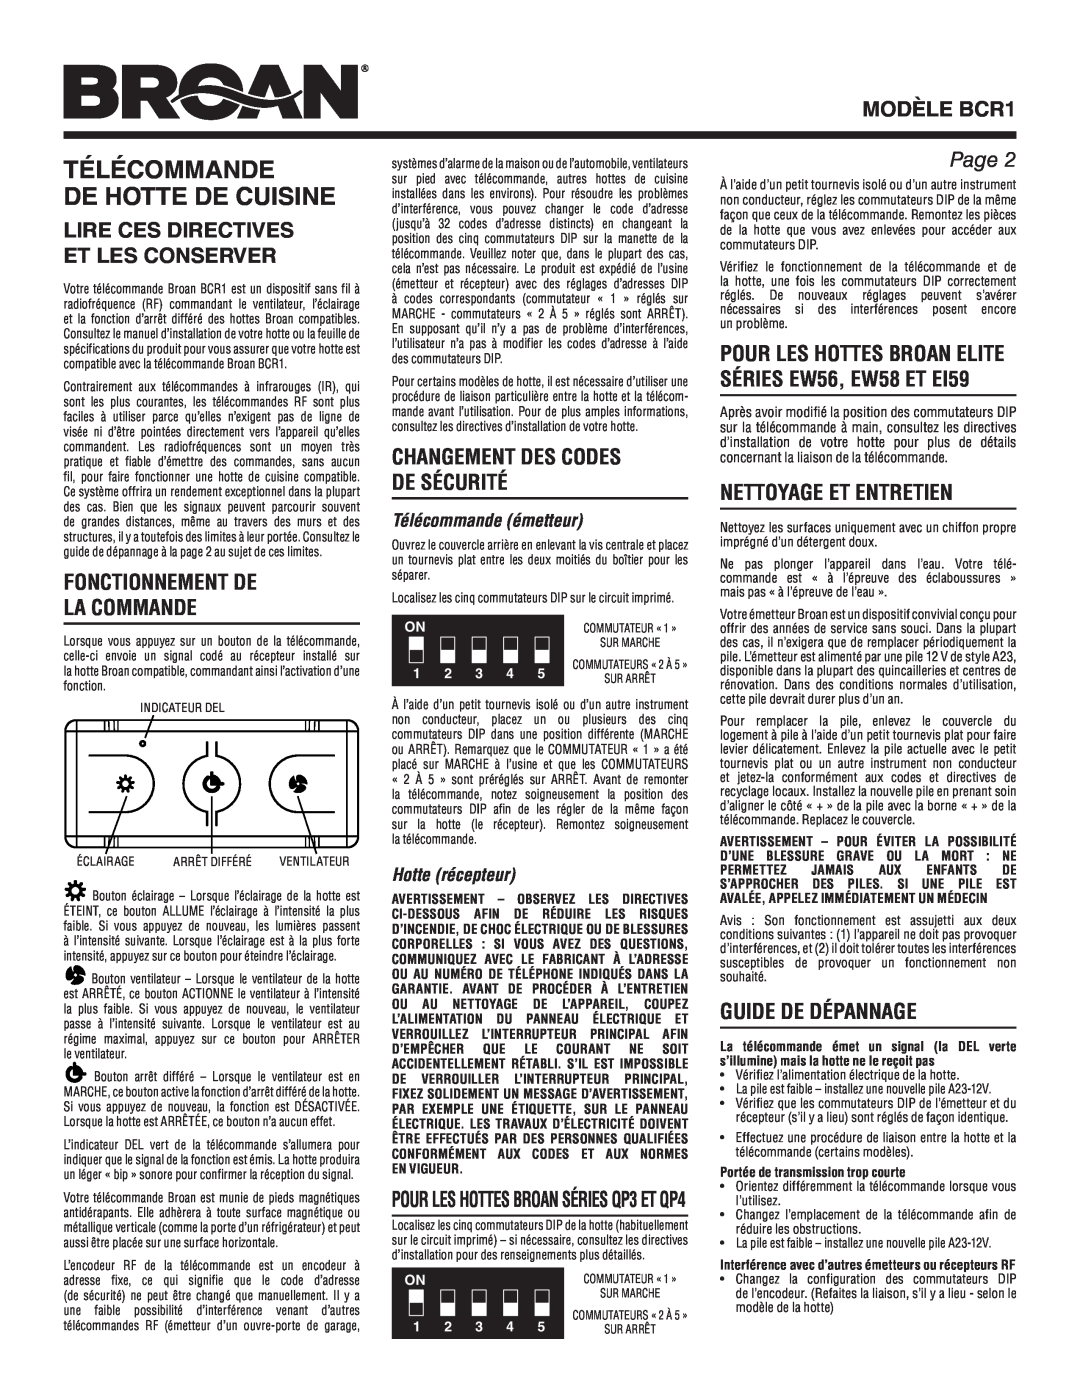 Broan MODÈLE BCR1, Lire Ces Directives Et Les Conserver, Fonctionnement De La Commande, Nettoyage Et Entretien, Page 